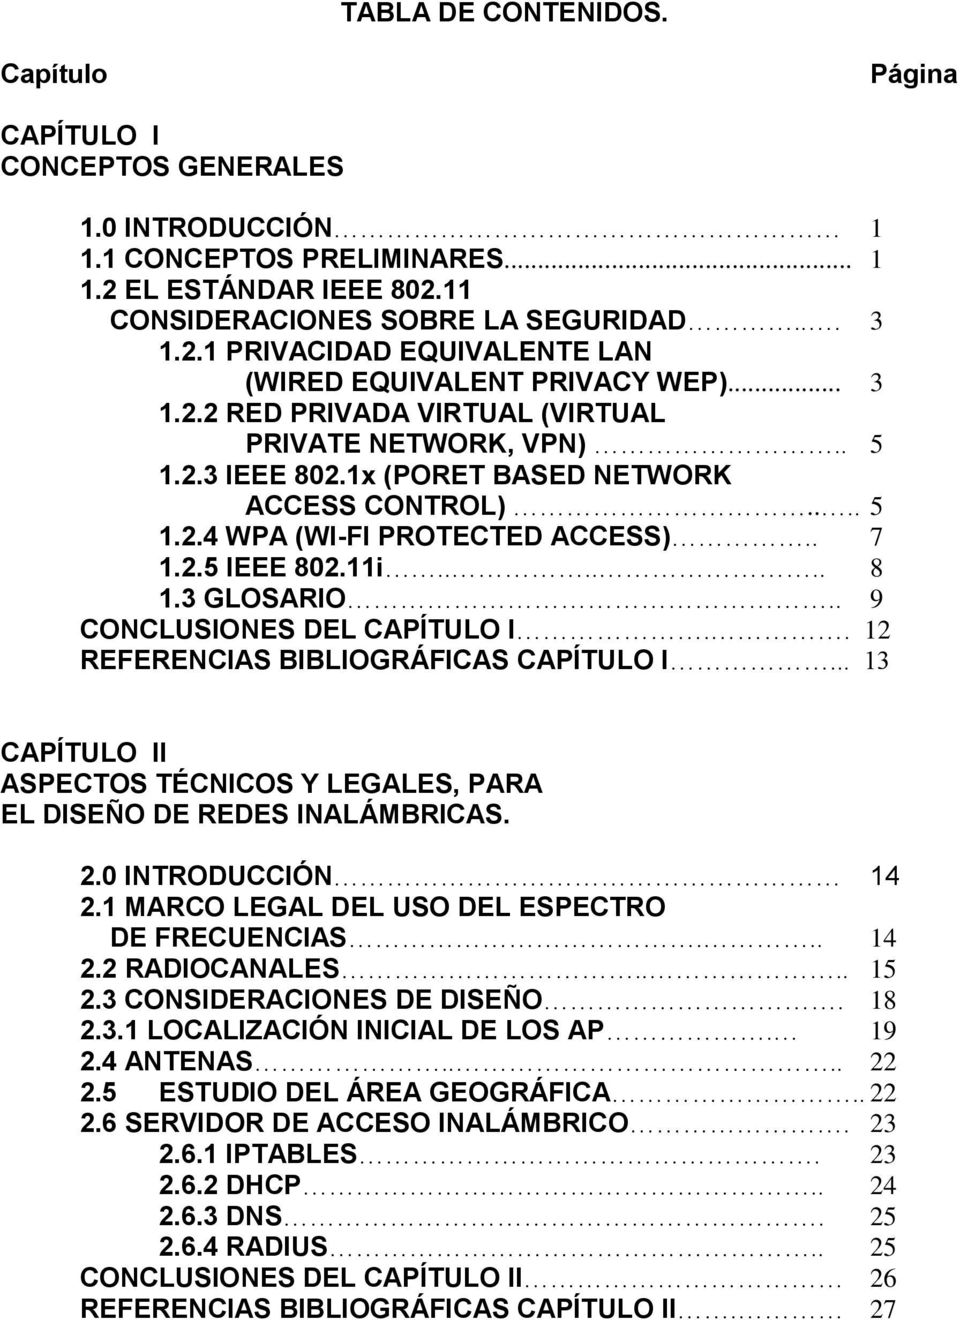 3 GLOSARIO.. 9 CONCLUSIONES DEL CAPÍTULO I.. 12 REFERENCIAS BIBLIOGRÁFICAS CAPÍTULO I... 13 CAPÍTULO II ASPECTOS TÉCNICOS Y LEGALES, PARA EL DISEÑO DE REDES INALÁMBRICAS. 2.0 INTRODUCCIÓN 14 2.